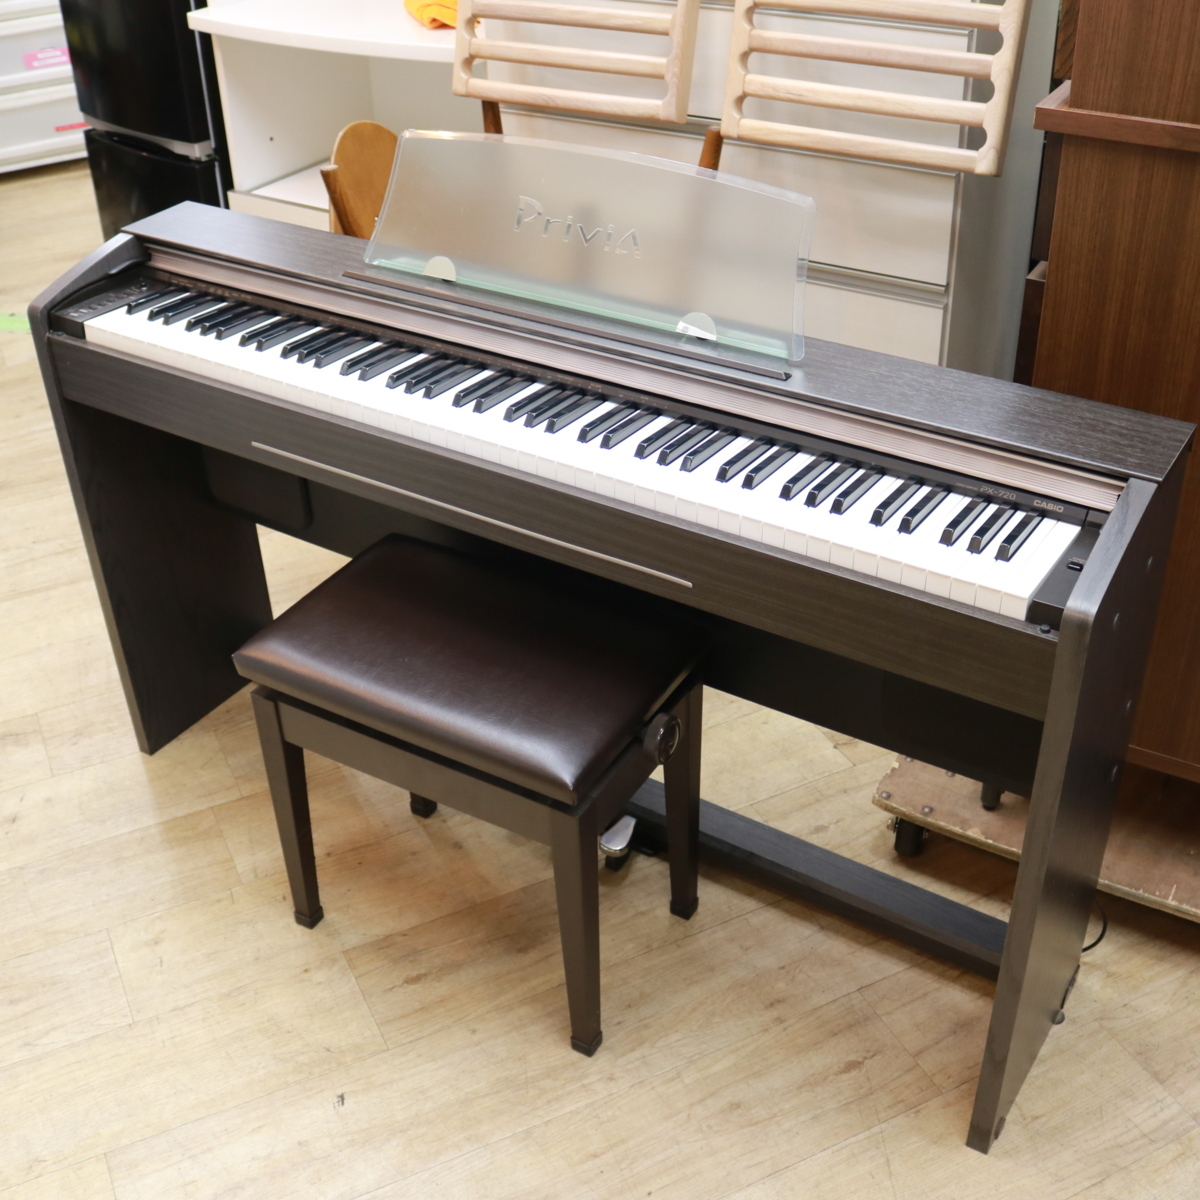 東京都稲城市にて カシオ 電子ピアノ Provoa PX-720 2008年製 を出張買取させて頂きました。